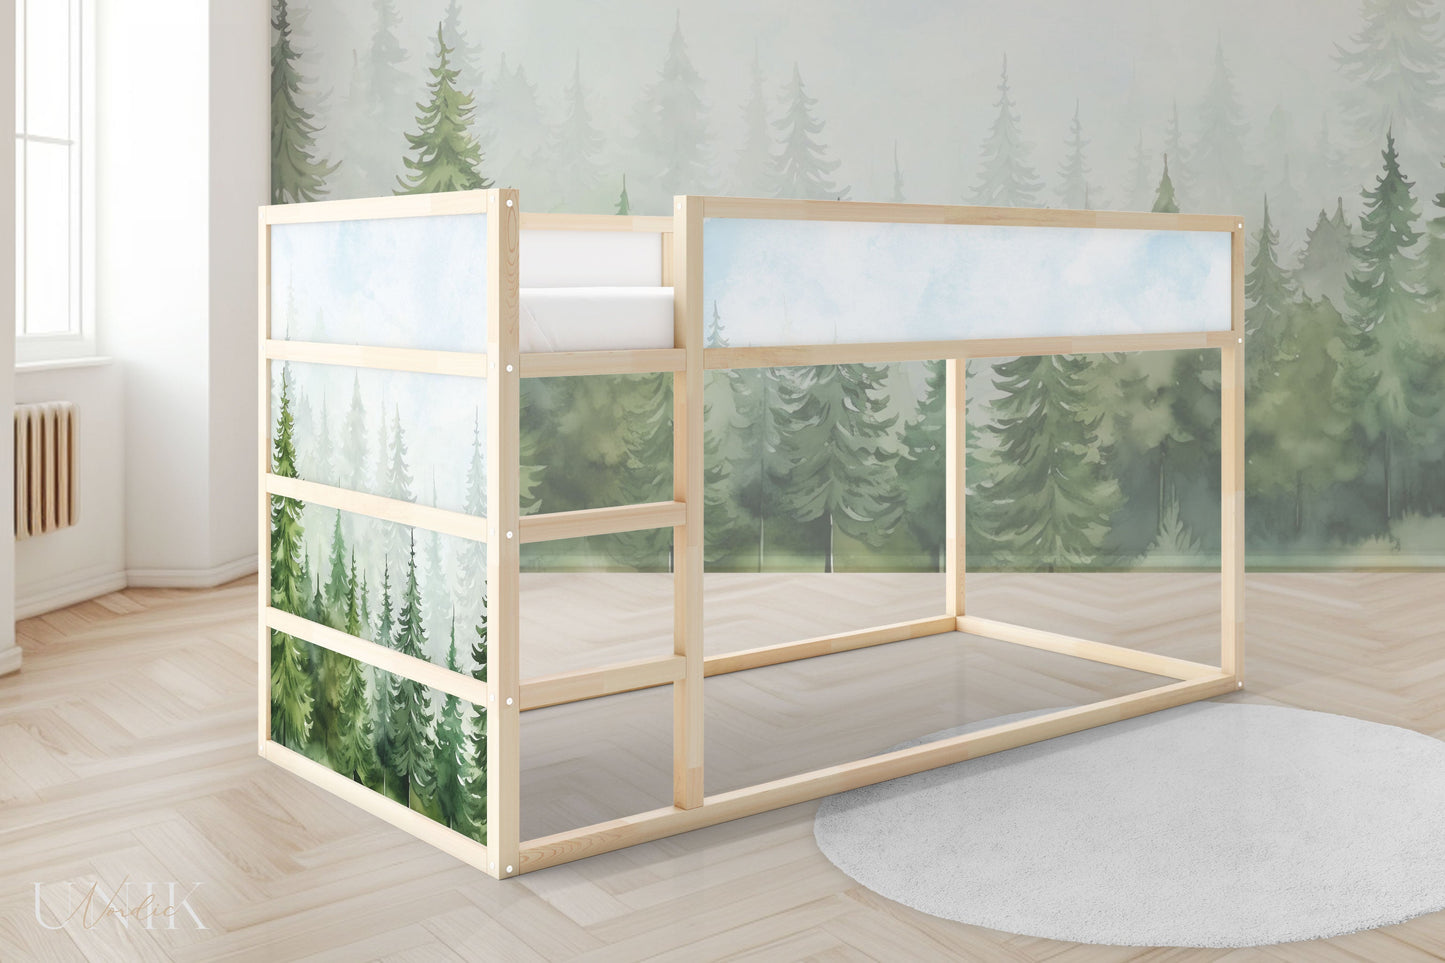 IKEA Kura Bed Sticker Set - Fir Forest